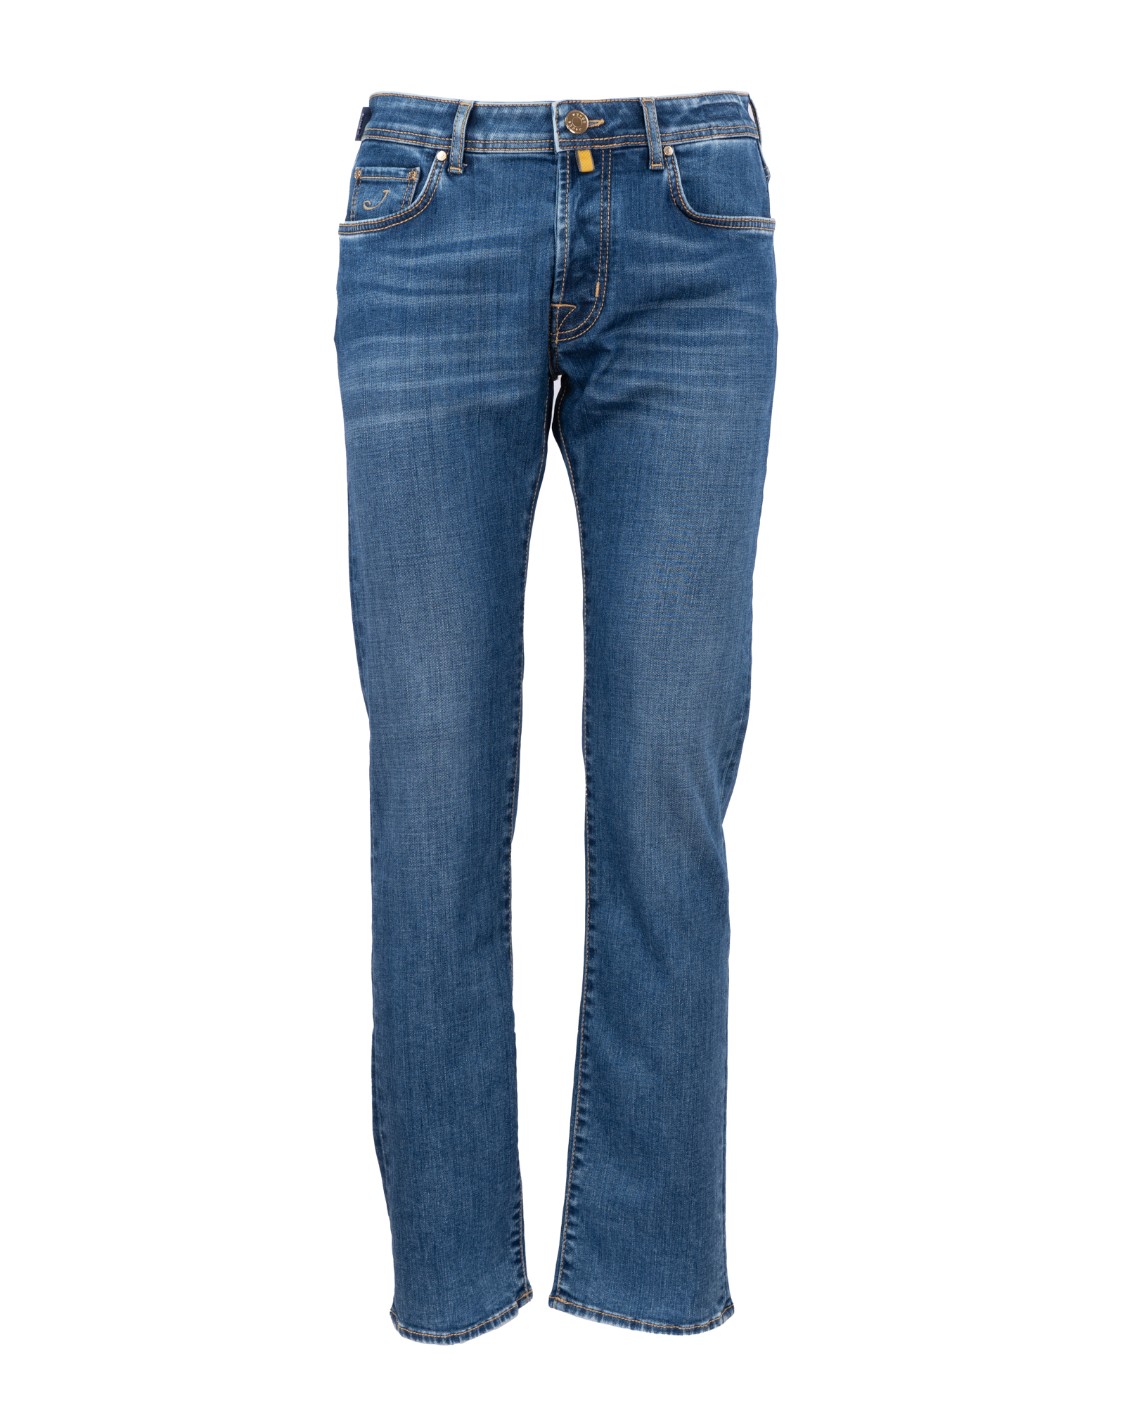 shop JACOB COHEN Saldi Jeans: Jacob Cohen jeans "Bard" in cotone elasticizzato.
Chiusura con zip e bottone.
Modello Cinque tasche.
Lunghezza alla caviglia.
Made in Italy.
Composizione: 96% cotone 4% elastan.. BARD S3748-217D number 3144007